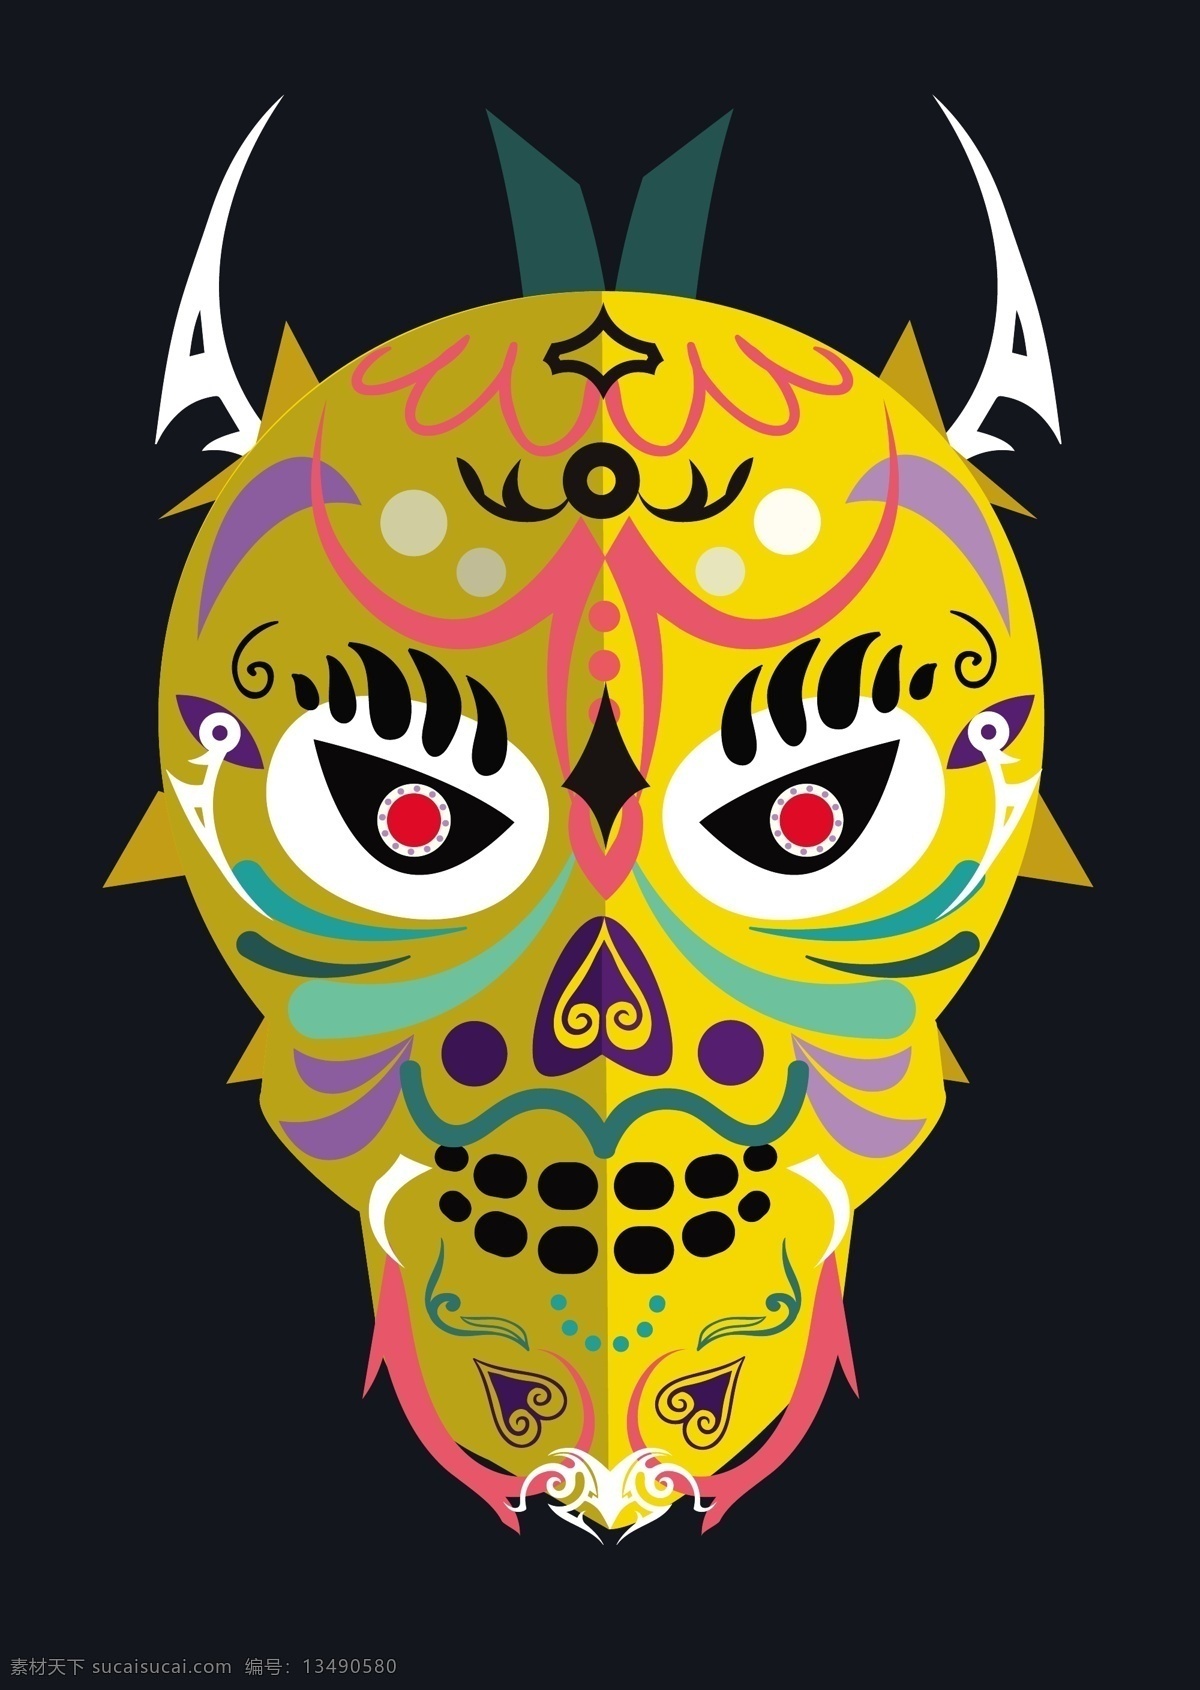 彩色 面具 传统 黑暗 背景 自由 向量 彩色面具 传统面具 动物面具